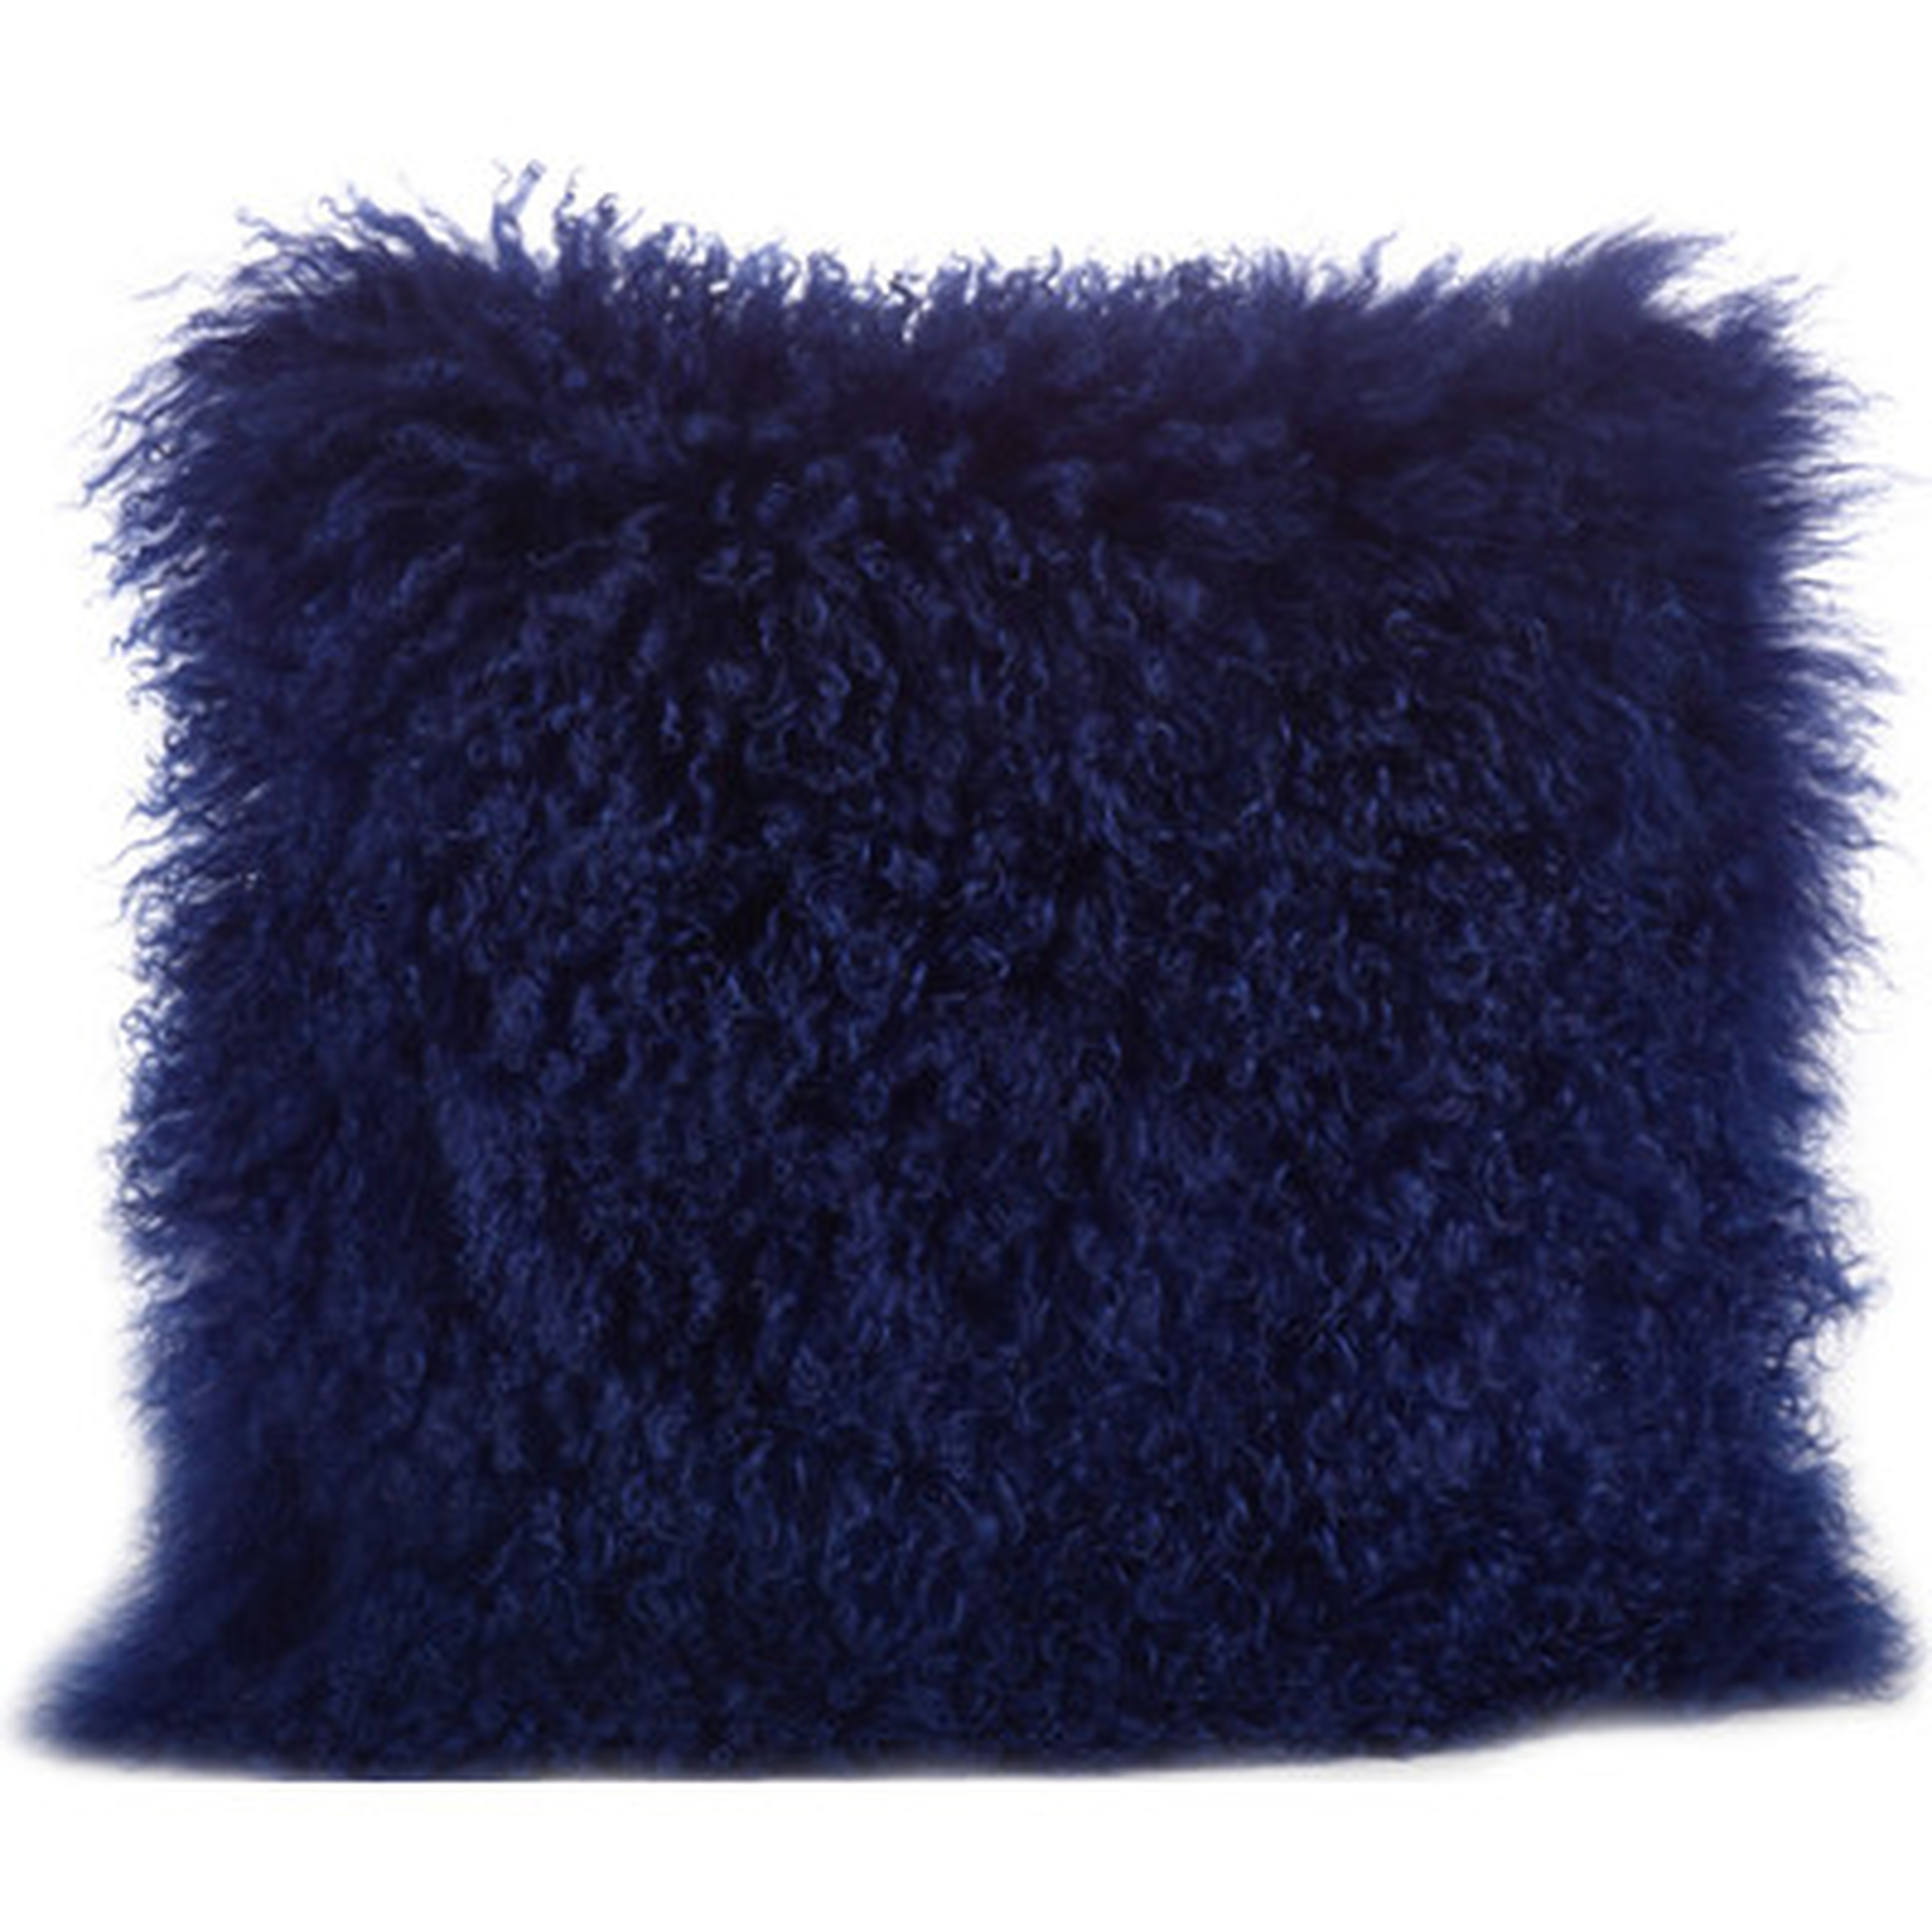 Becky Mongolian Lamb Fur Wool Throw Pillow - Cobalt Blue - 20" x 20" - With insert - Wayfair